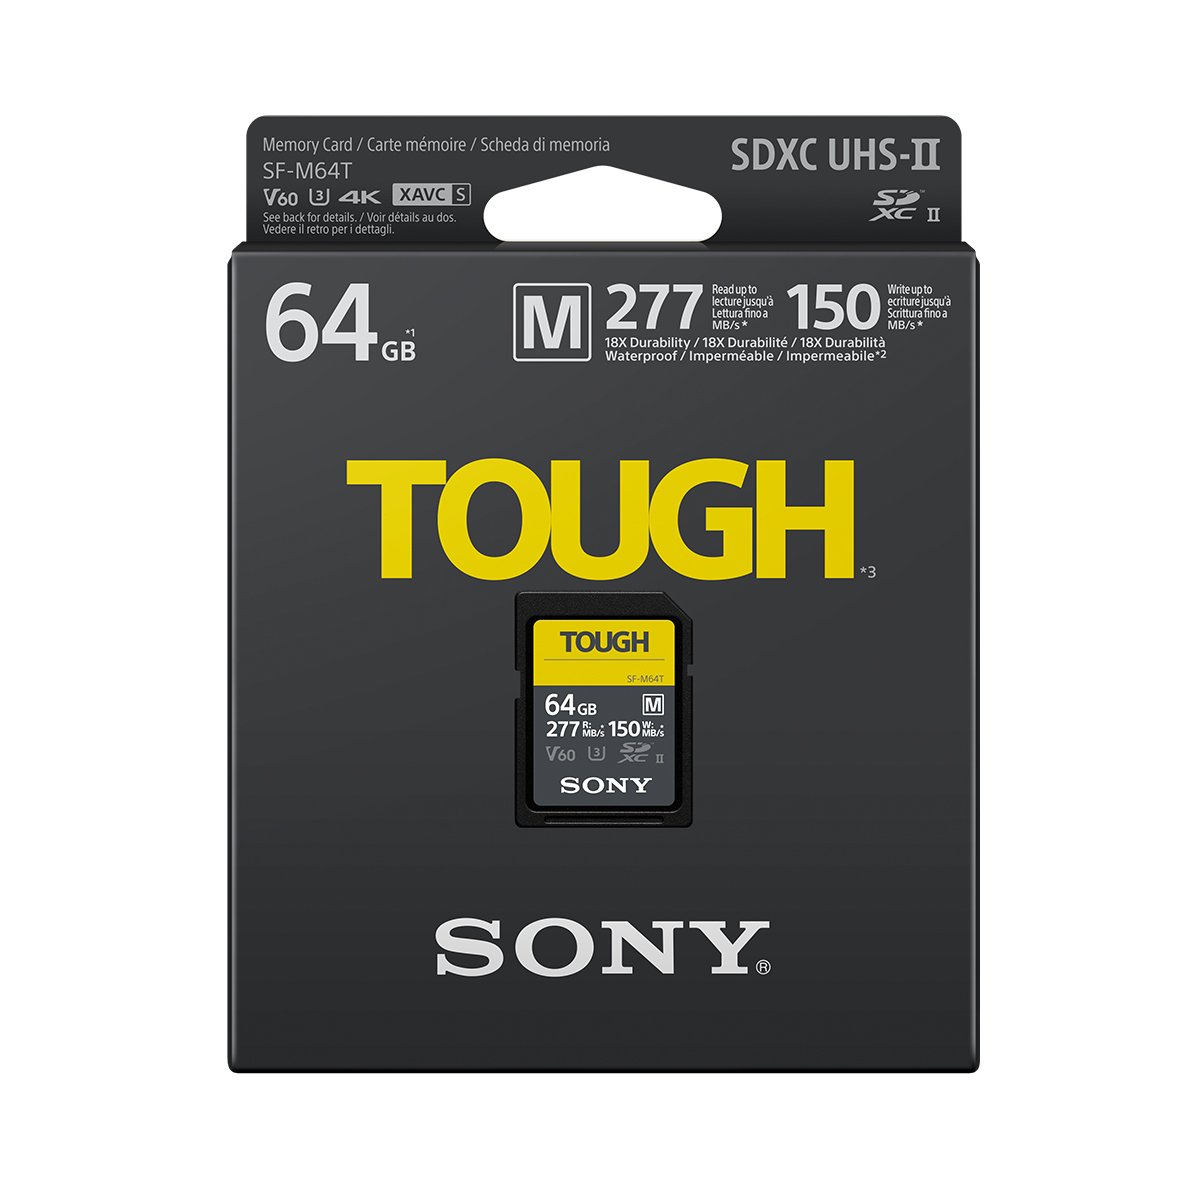 Sony 64GB SF-M TOUGH UHS-II SDXC (V60) Card